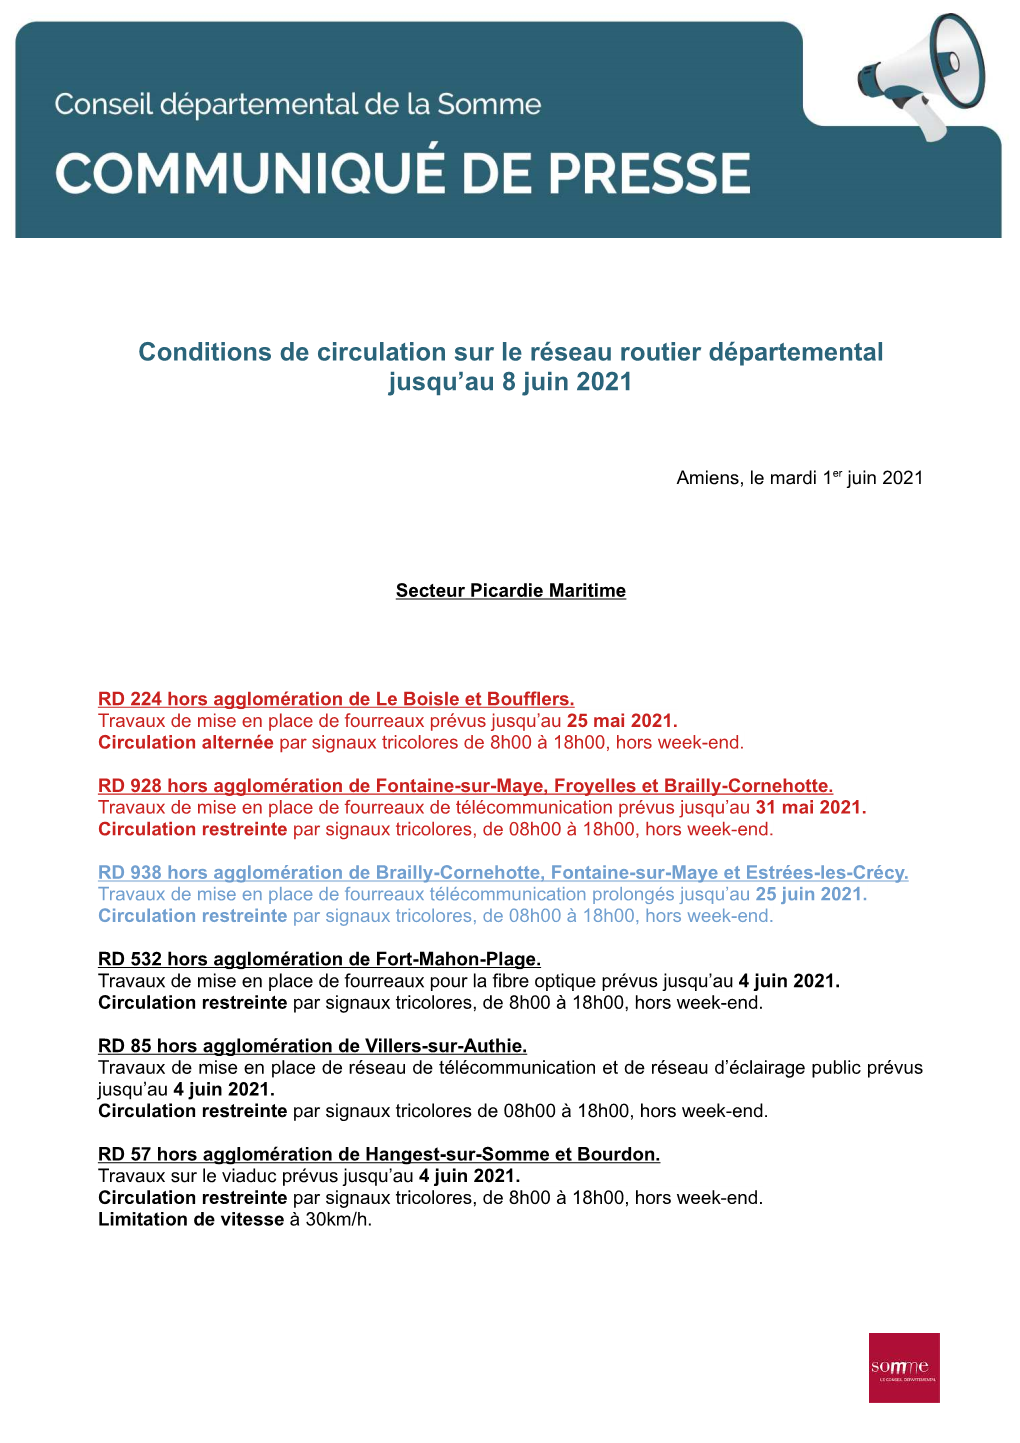 Conditions De Circulation Sur Le Réseau Routier Départemental Jusqu'au 8